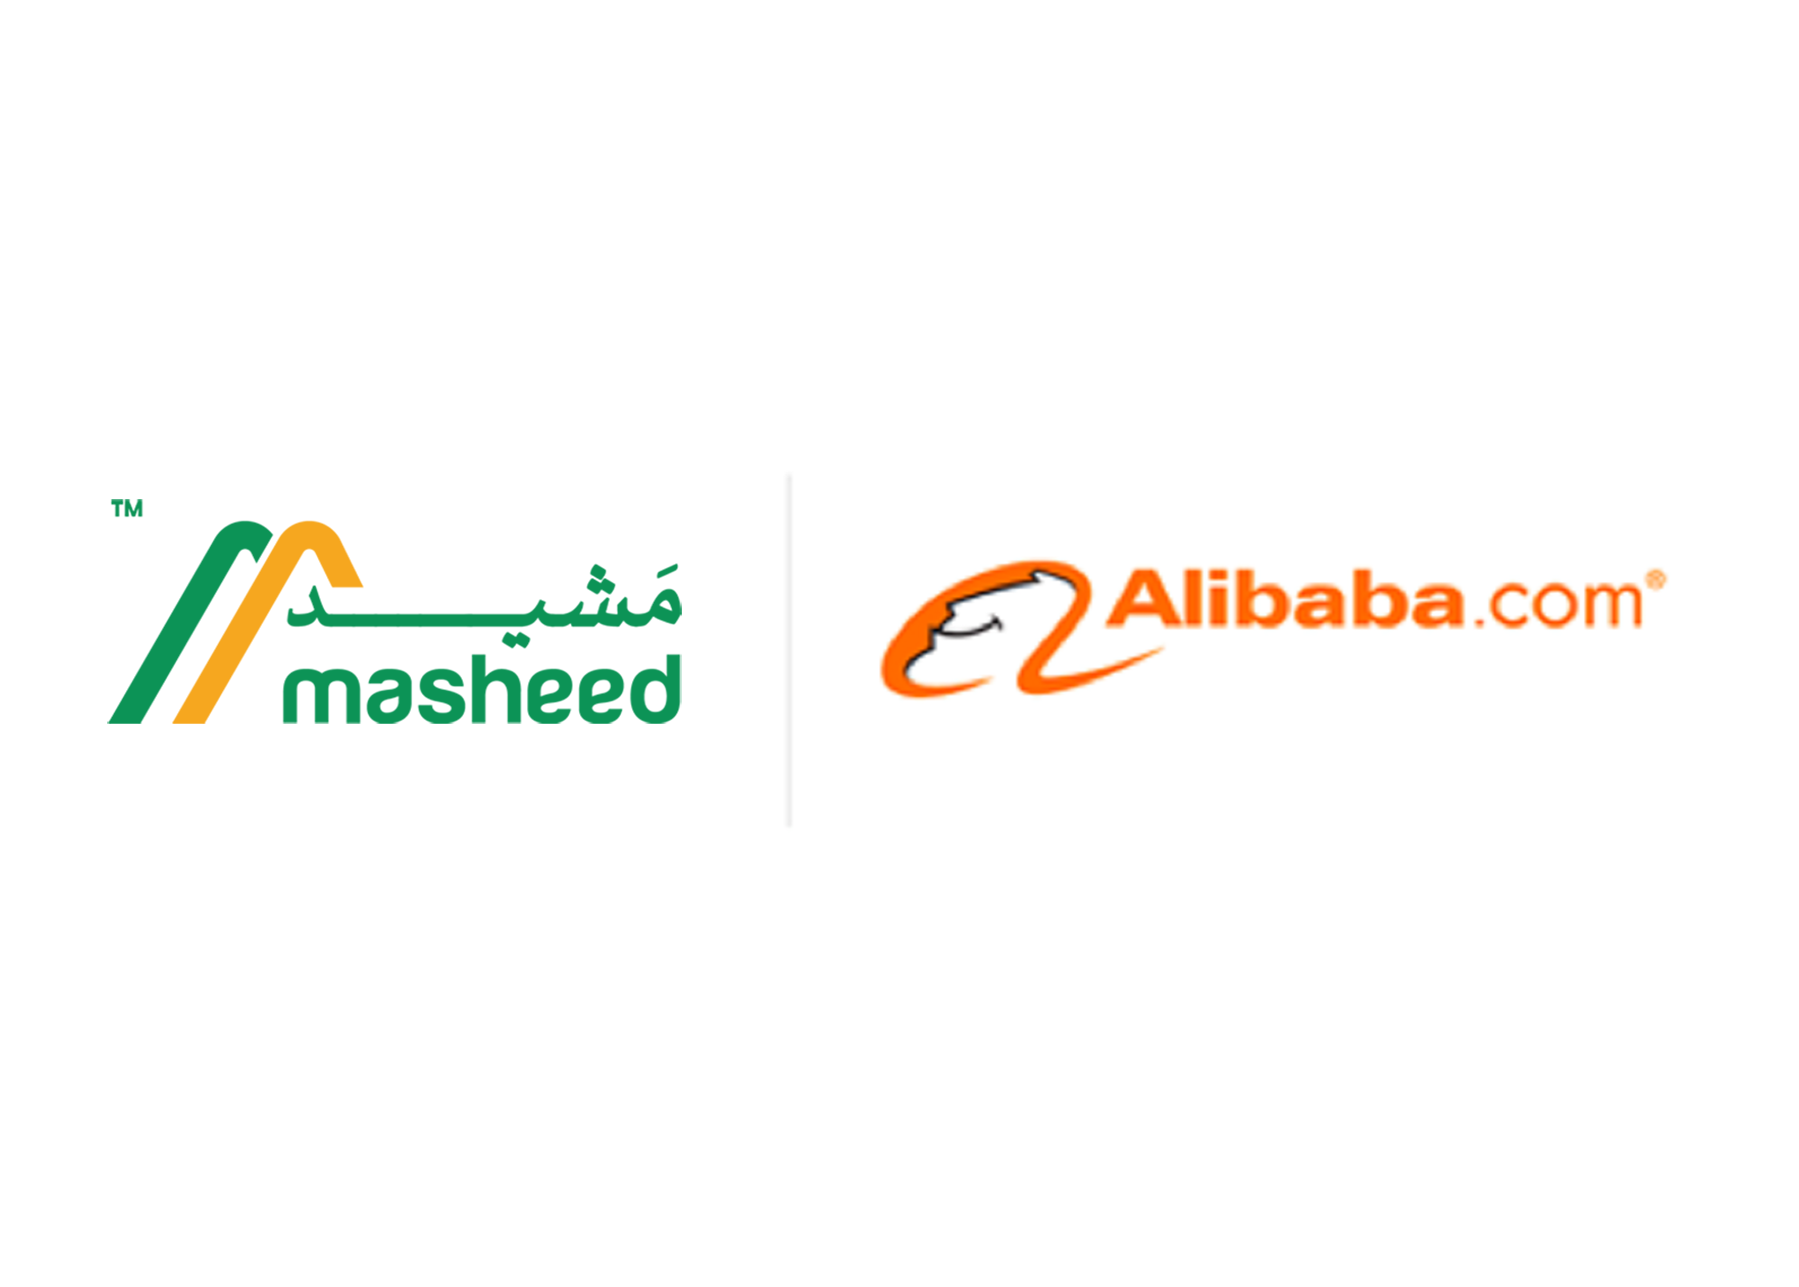 masheed Goes Global on Alibaba 